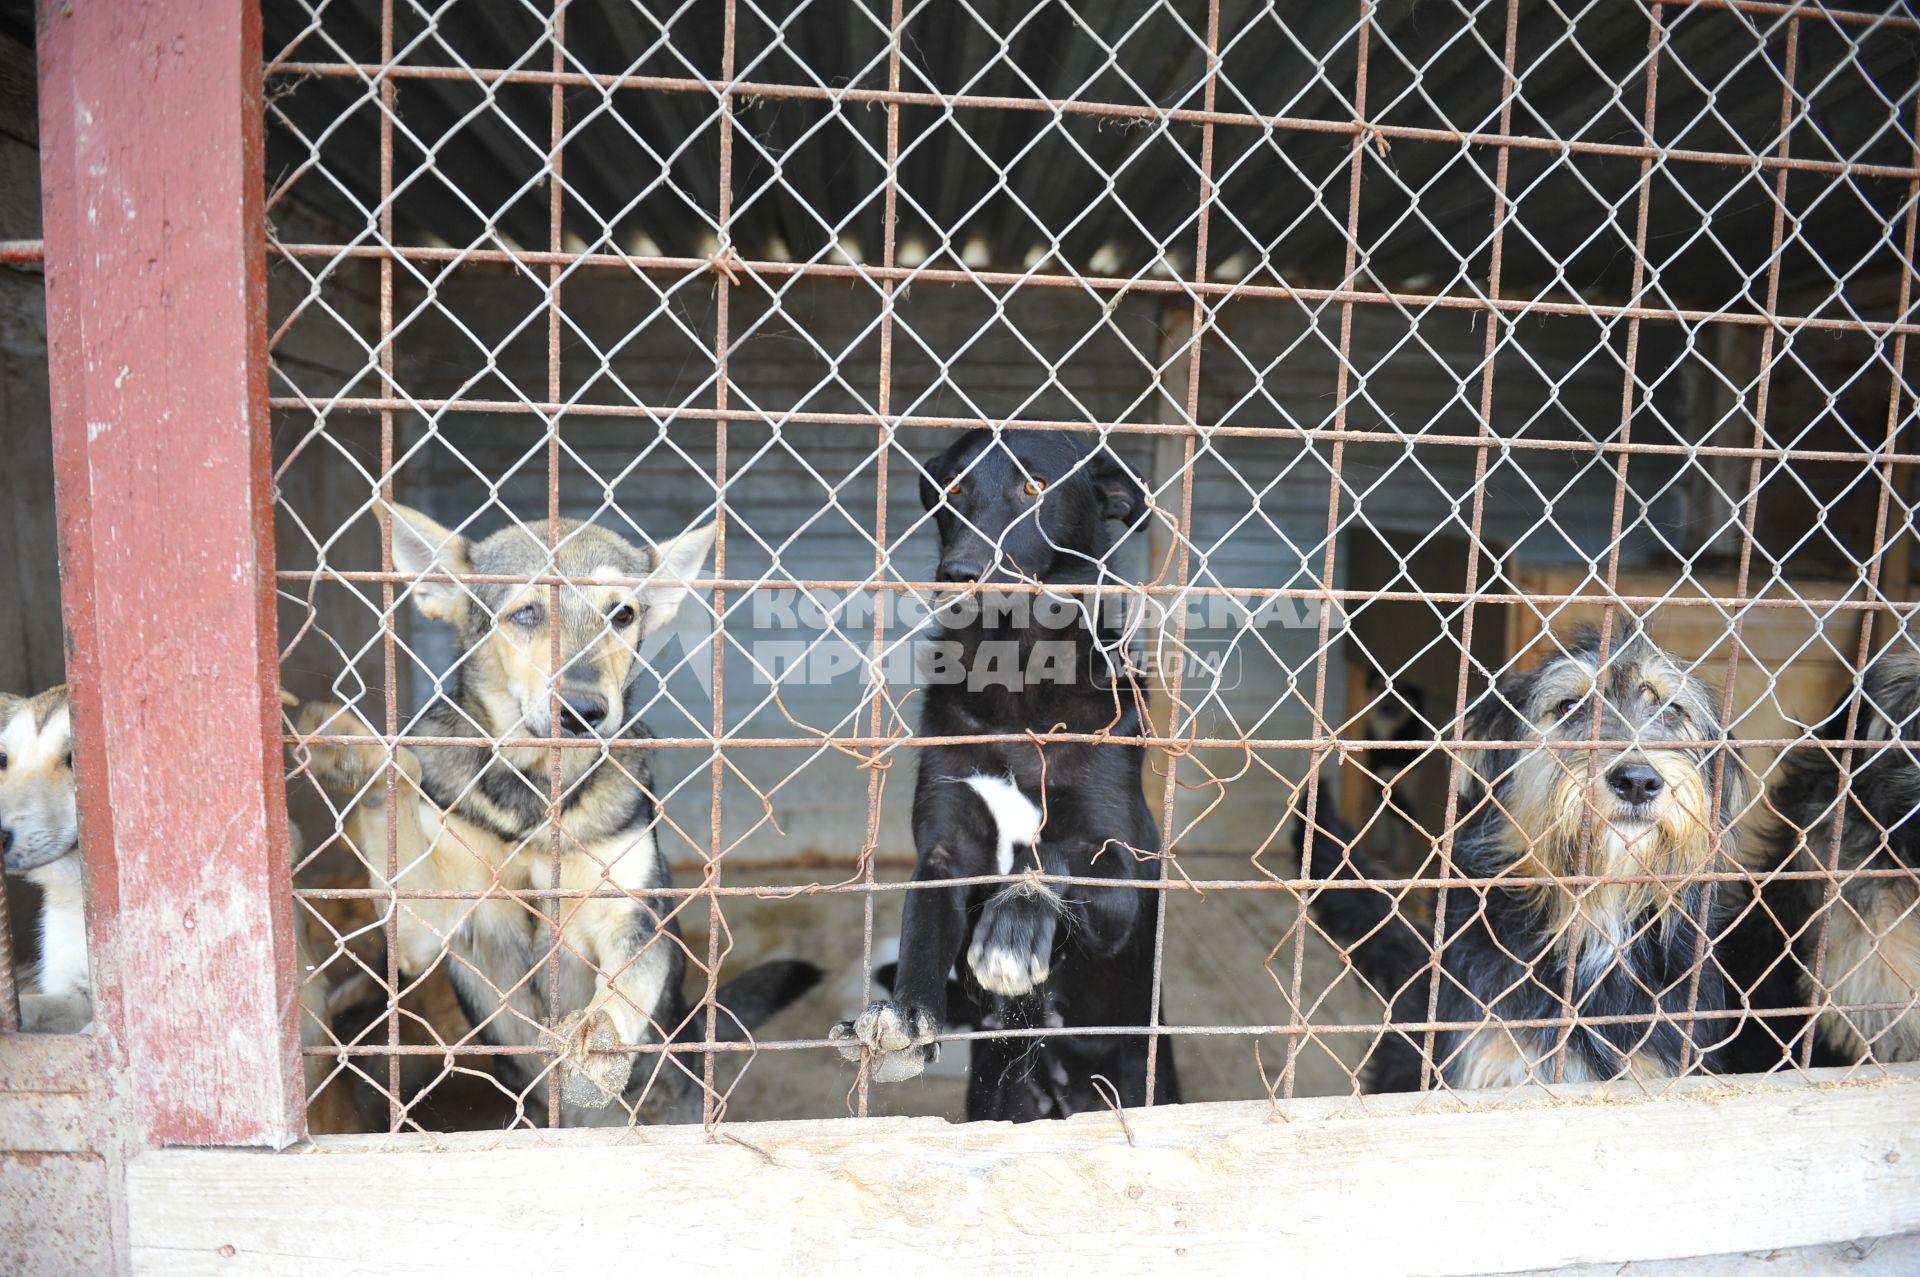 Питомник для бездомных собак и кошек в городе Пушкино. На снимке: бездомные собаки в вольере.